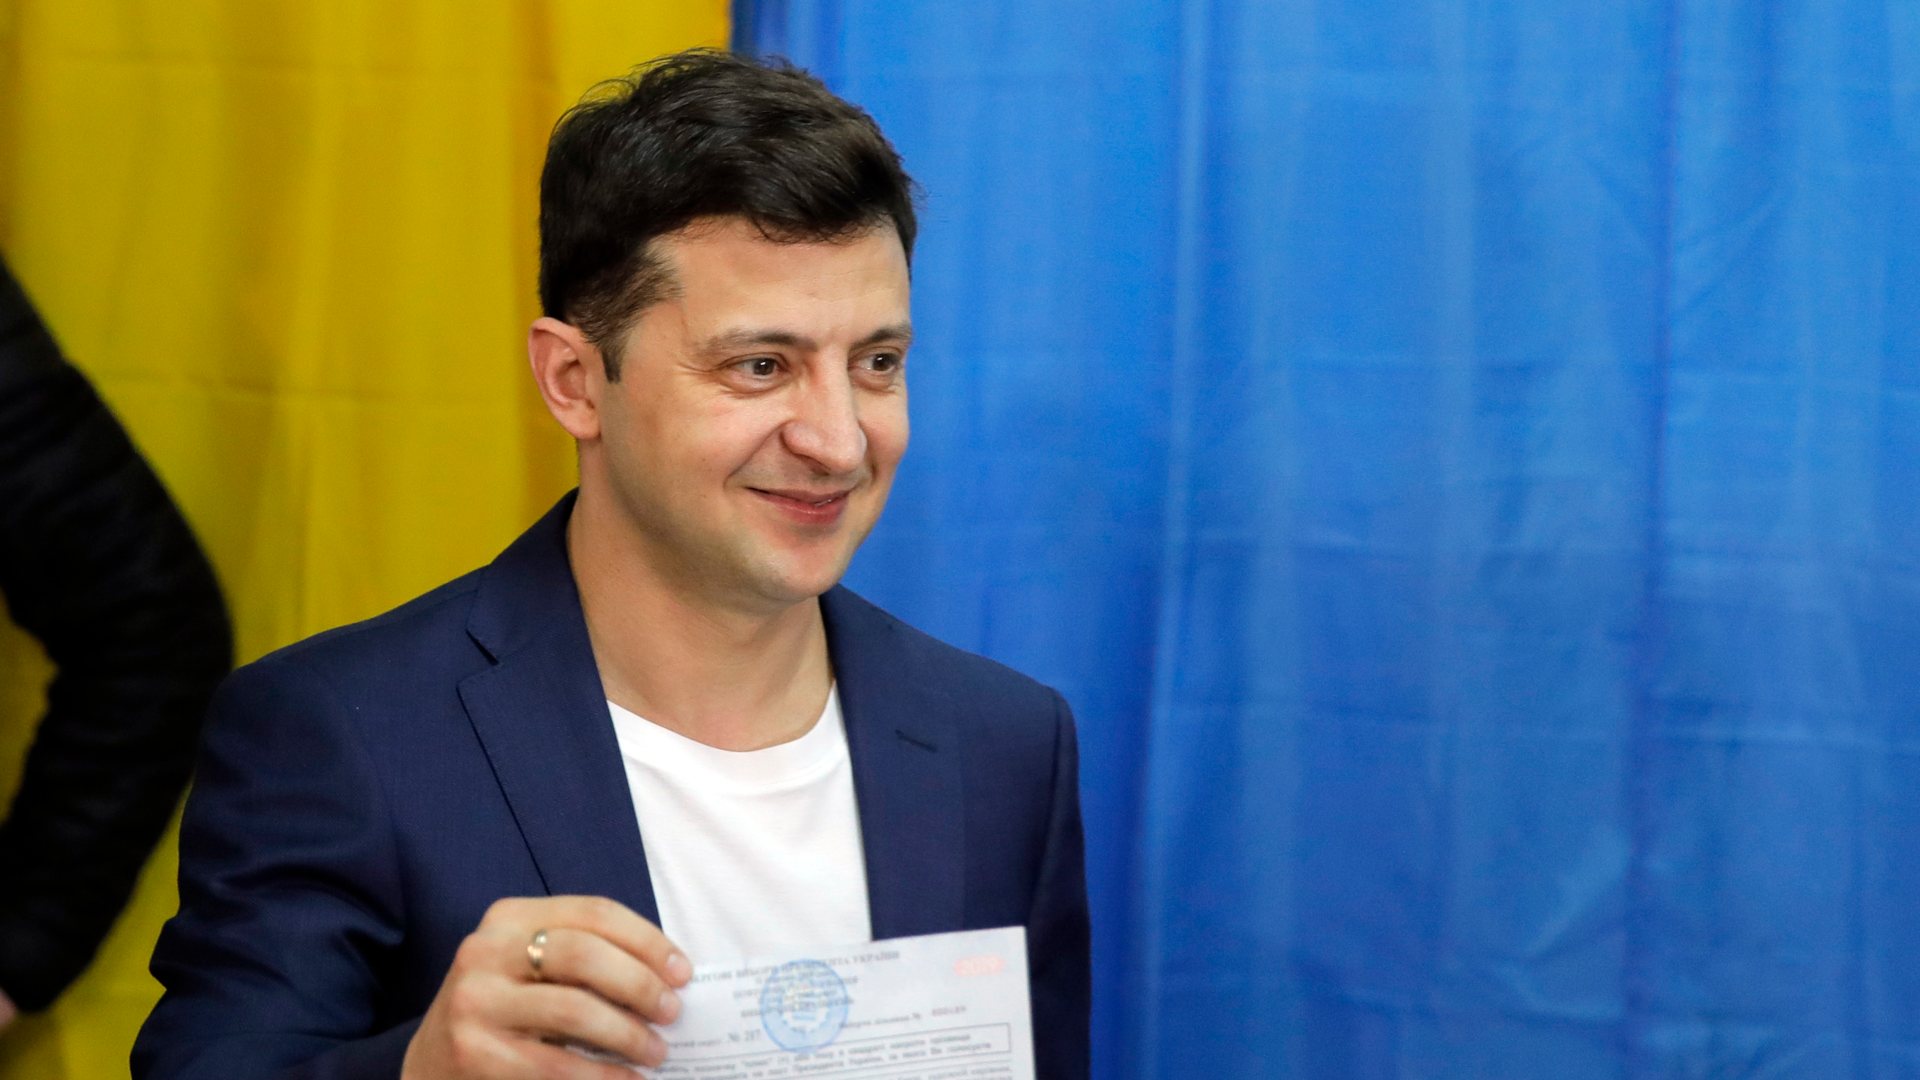 El cómico Zelenski, presidente de Ucrania con el 73% de los votos